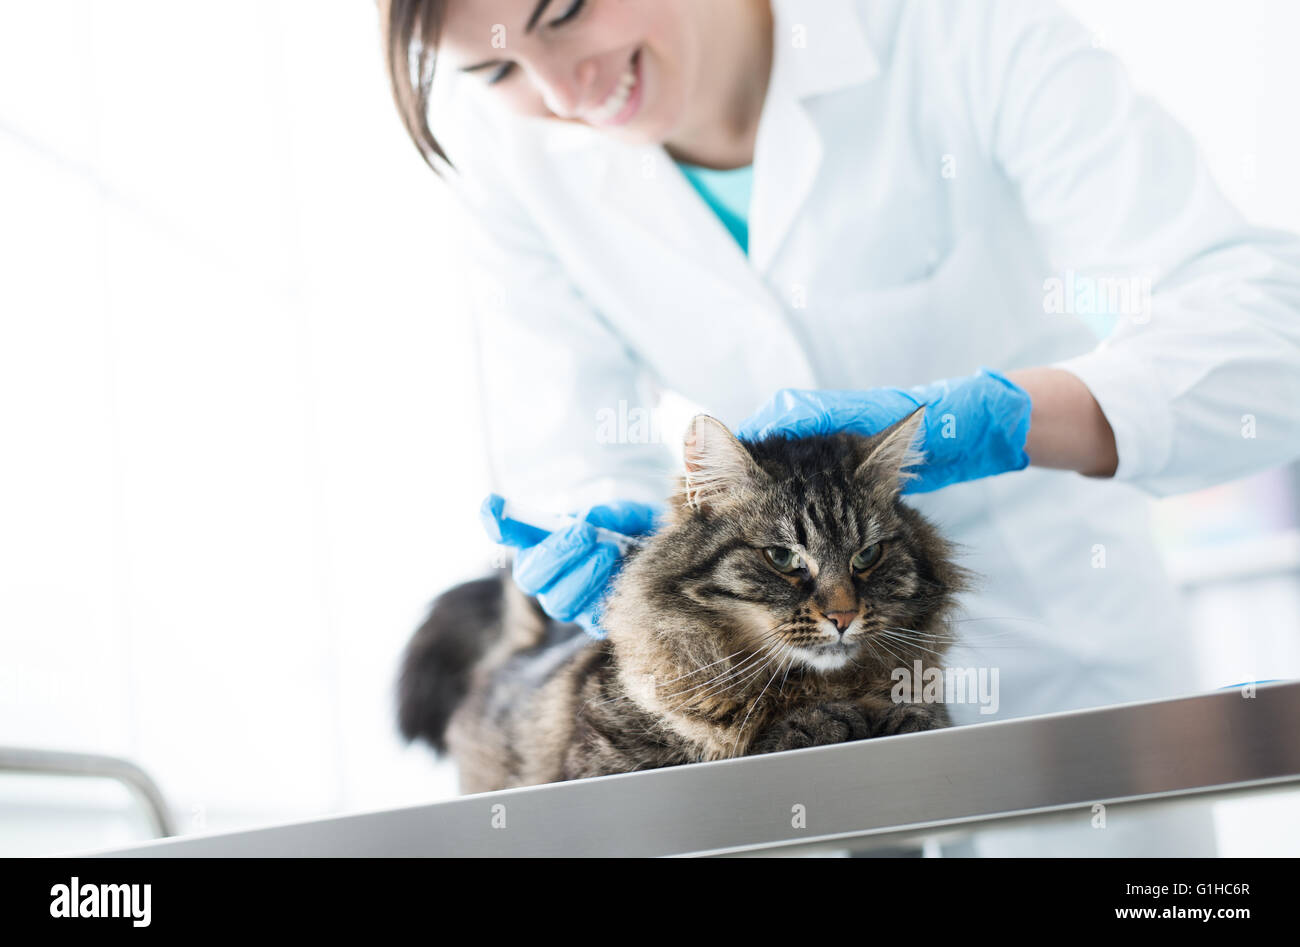 Tierarzt eine Injektion zu geben, eine Katze auf einem OP Tisch, Impfung  und Vorbeugung Konzept Stockfotografie - Alamy